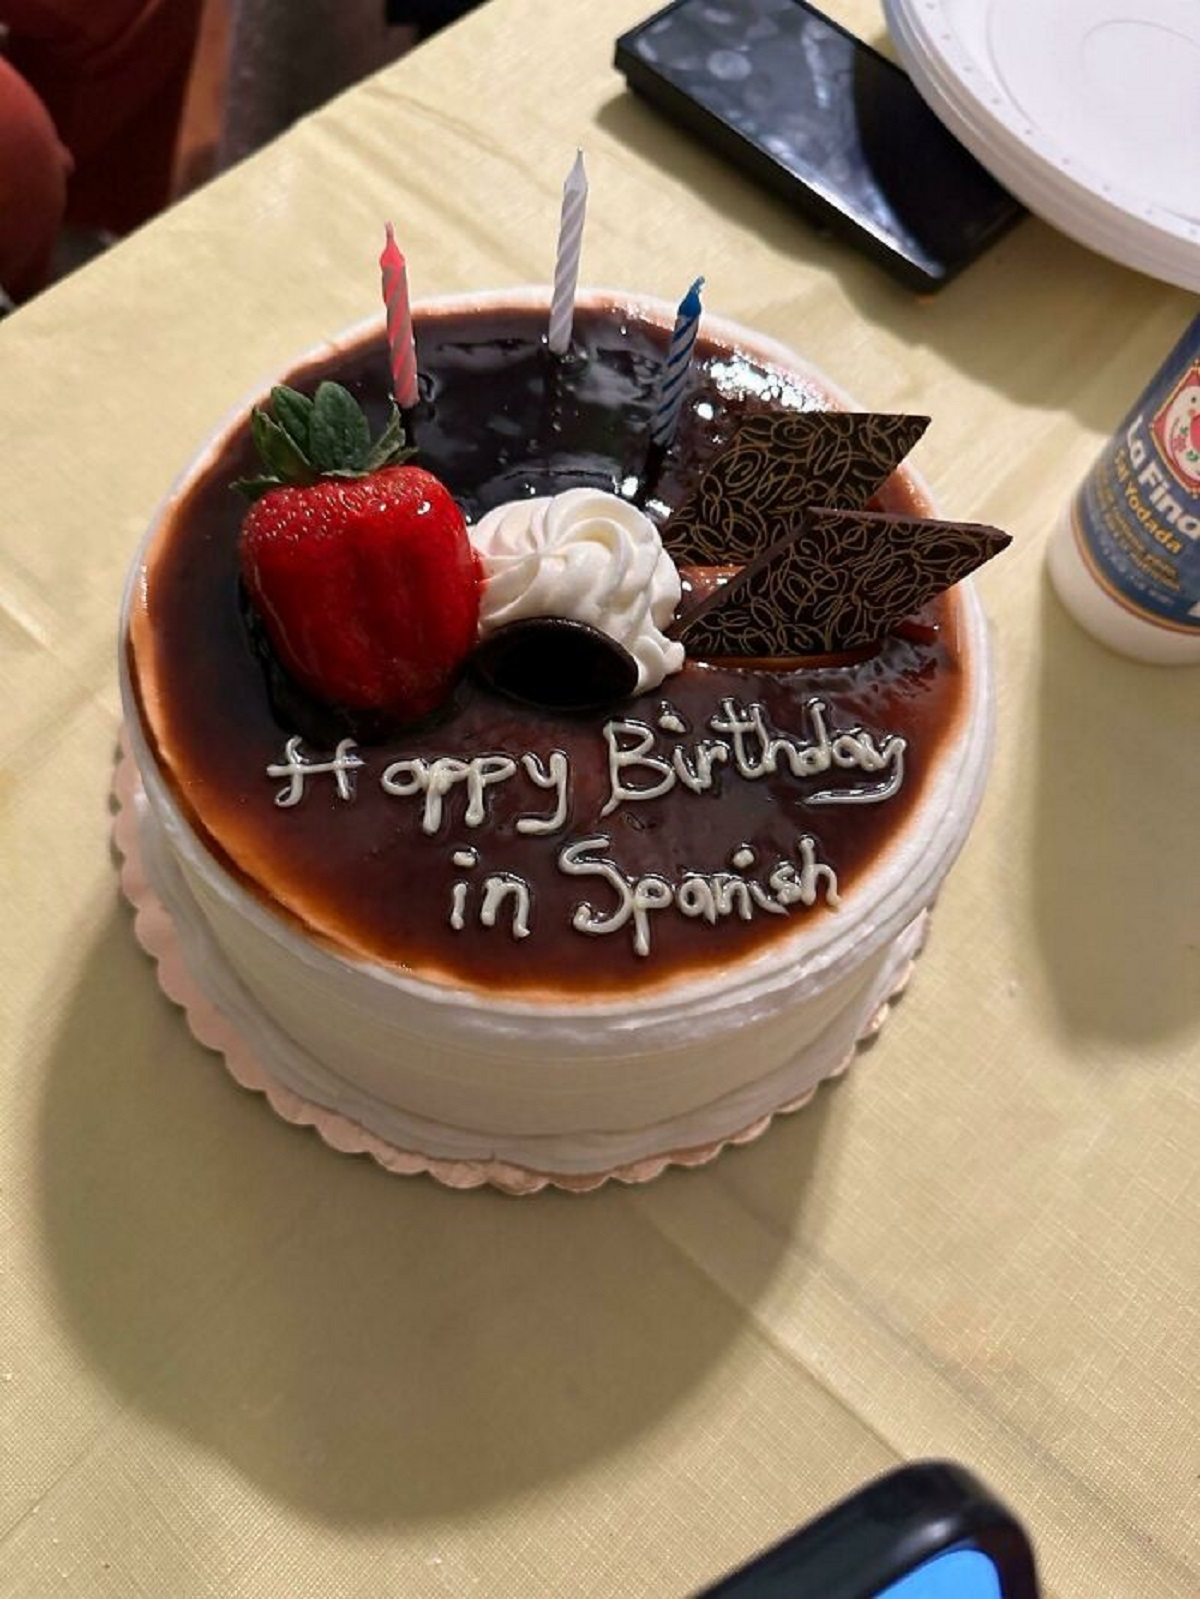 happy birthday in spanish cake meme - Happy Birthday in Spanish Yodada Find